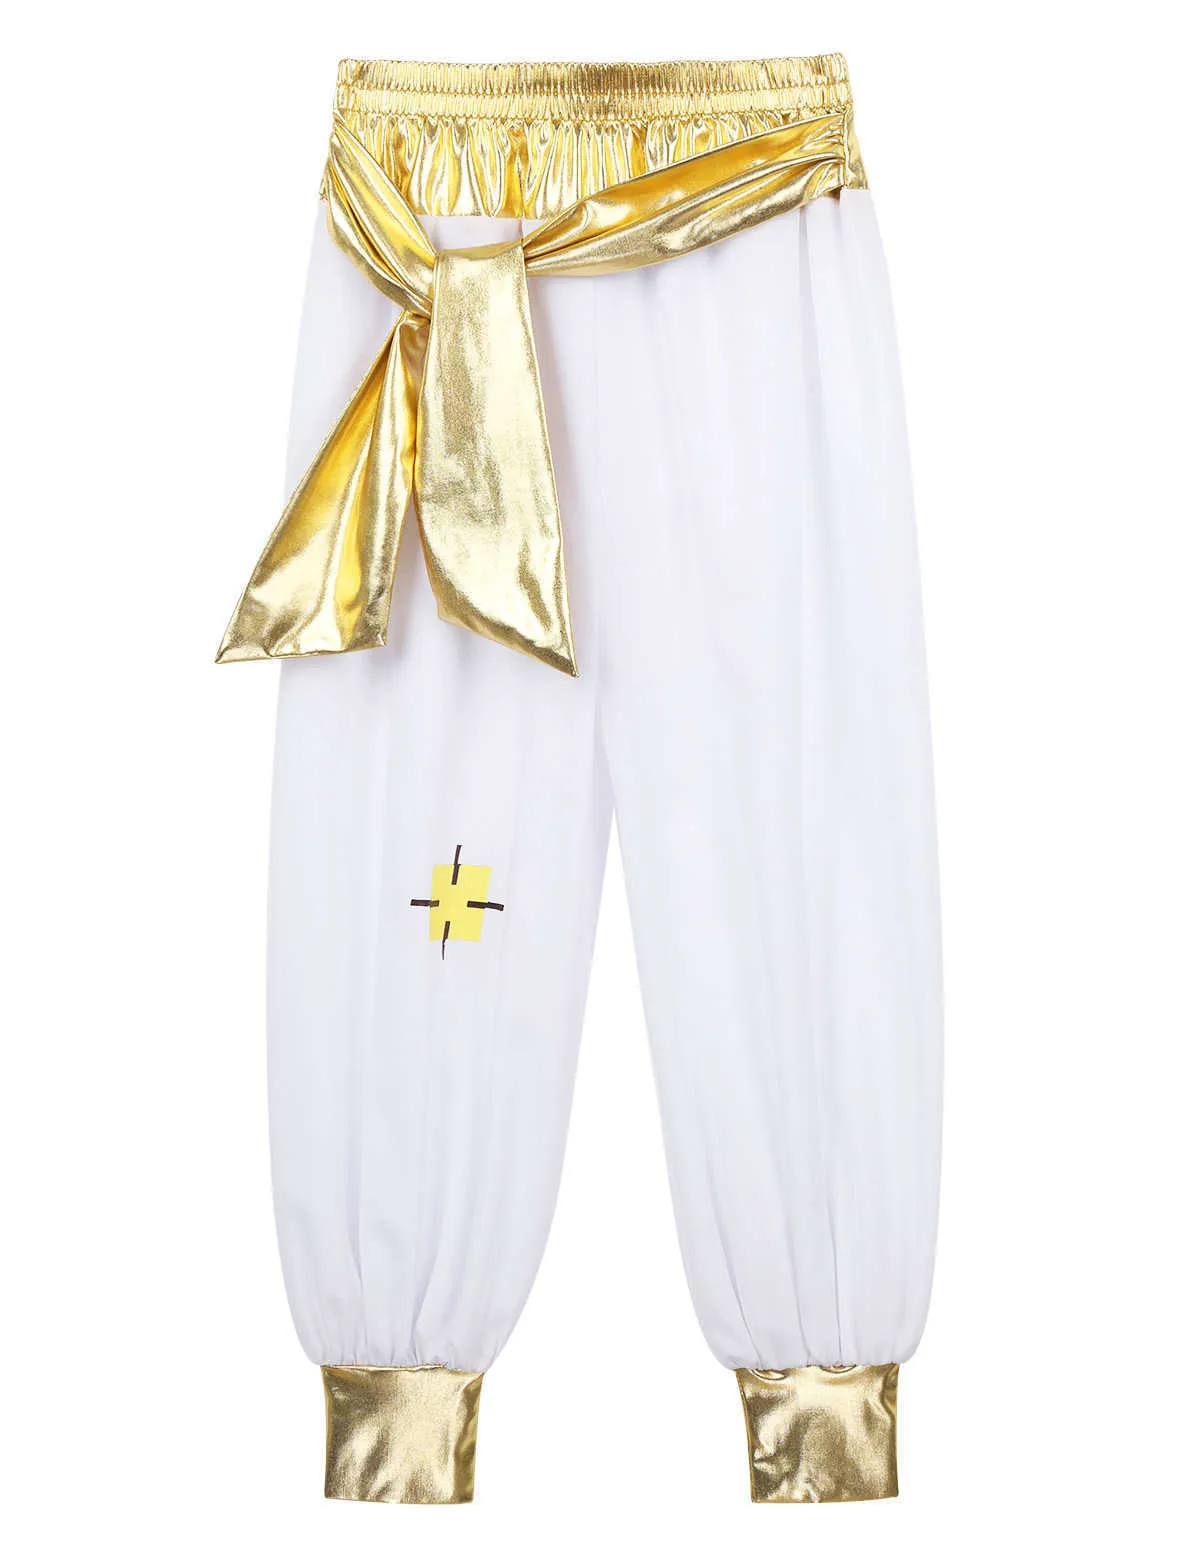 Kinder Jungen Fancy Arabian Prince Kostüme Cap Sleeves Weste mit Hosen für Halloween Cosplay Fairy Partys Dress Up Q0910